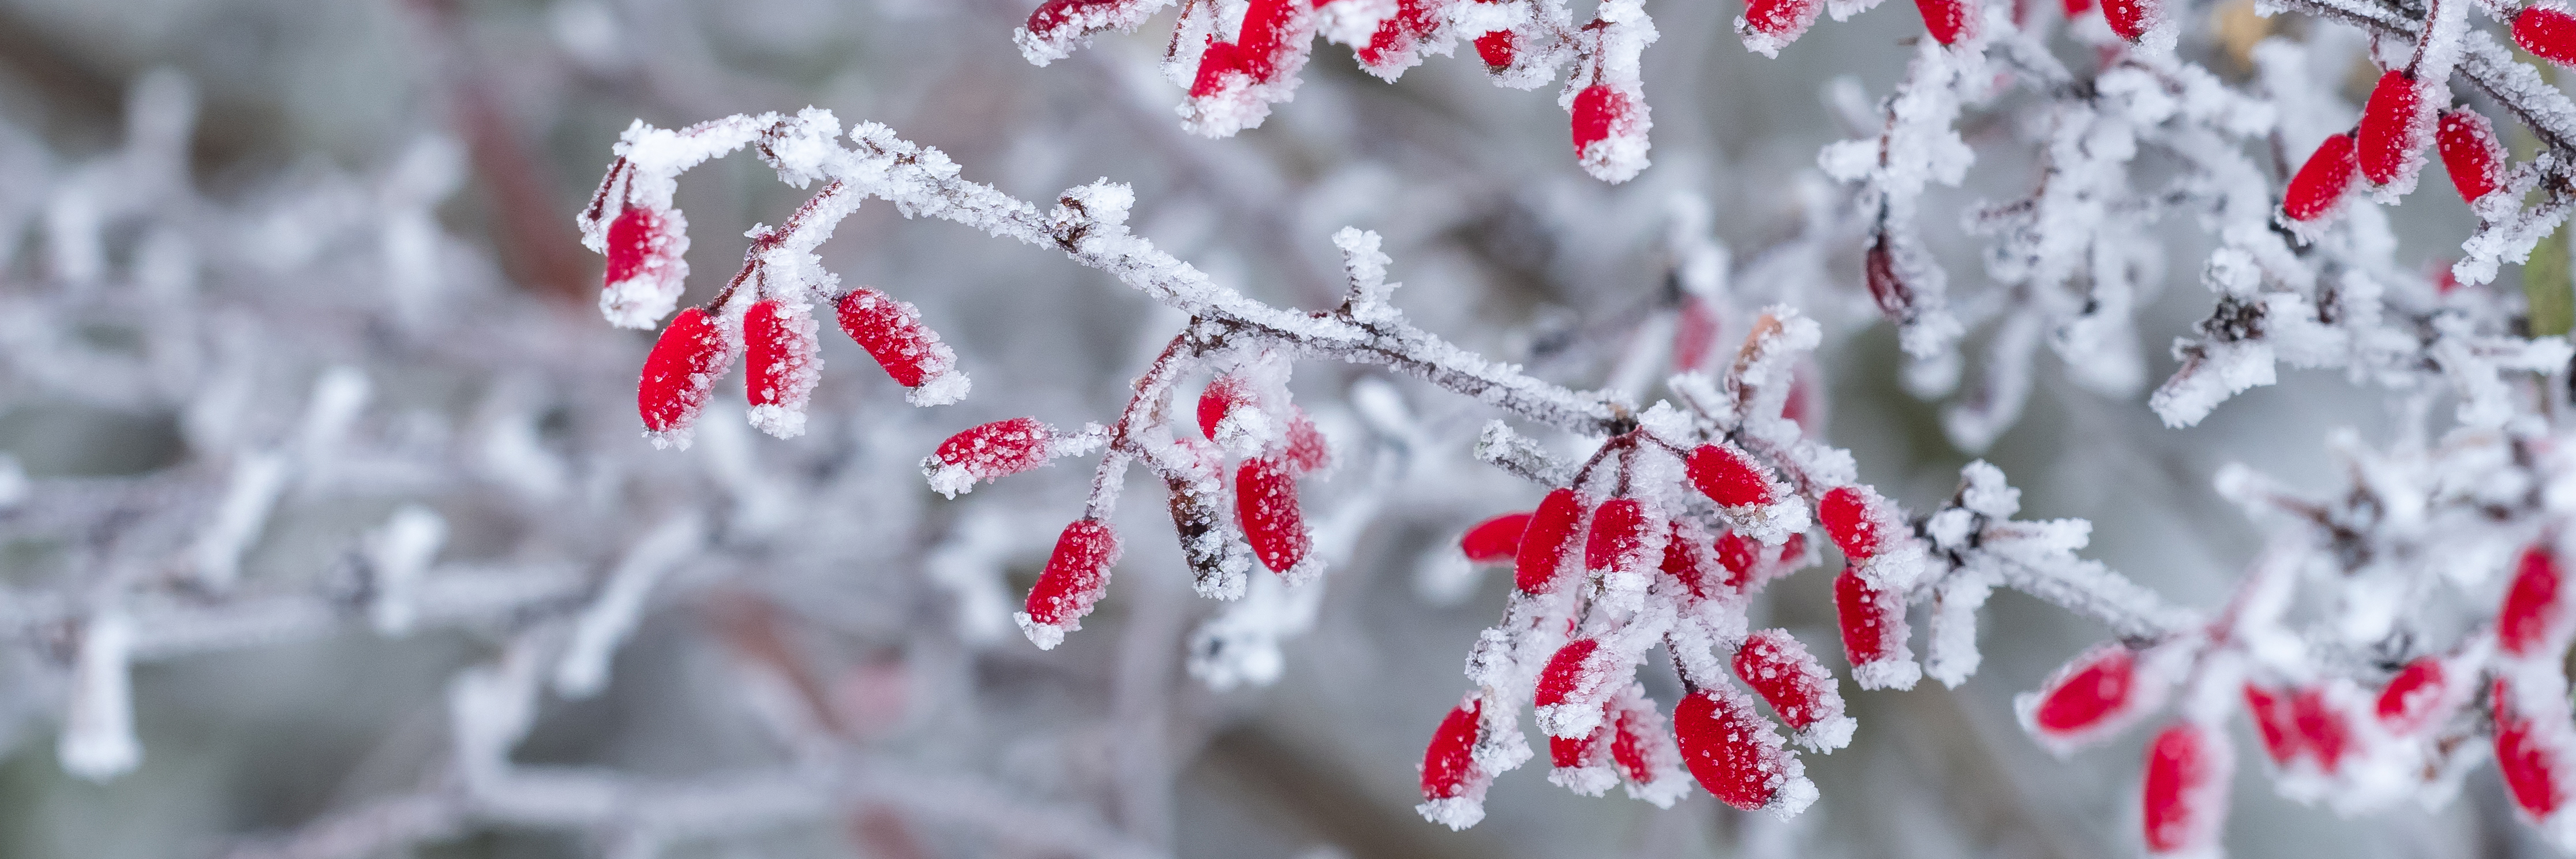 Frostiga grenar med röda bär